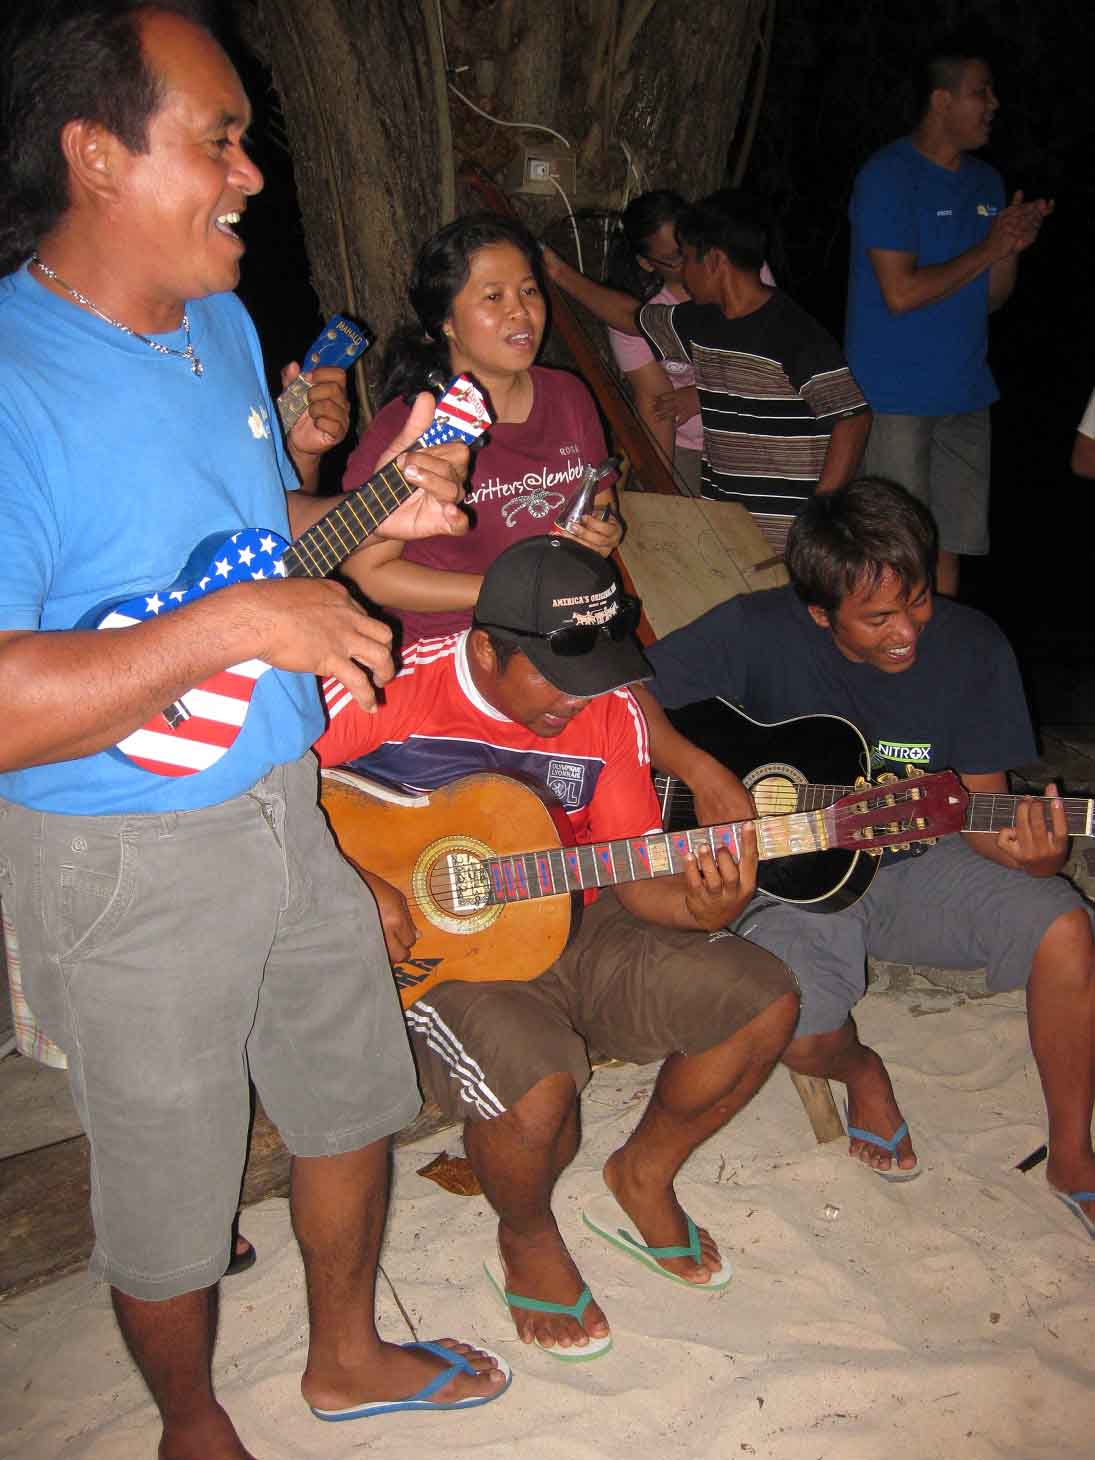 Bangka Band playing